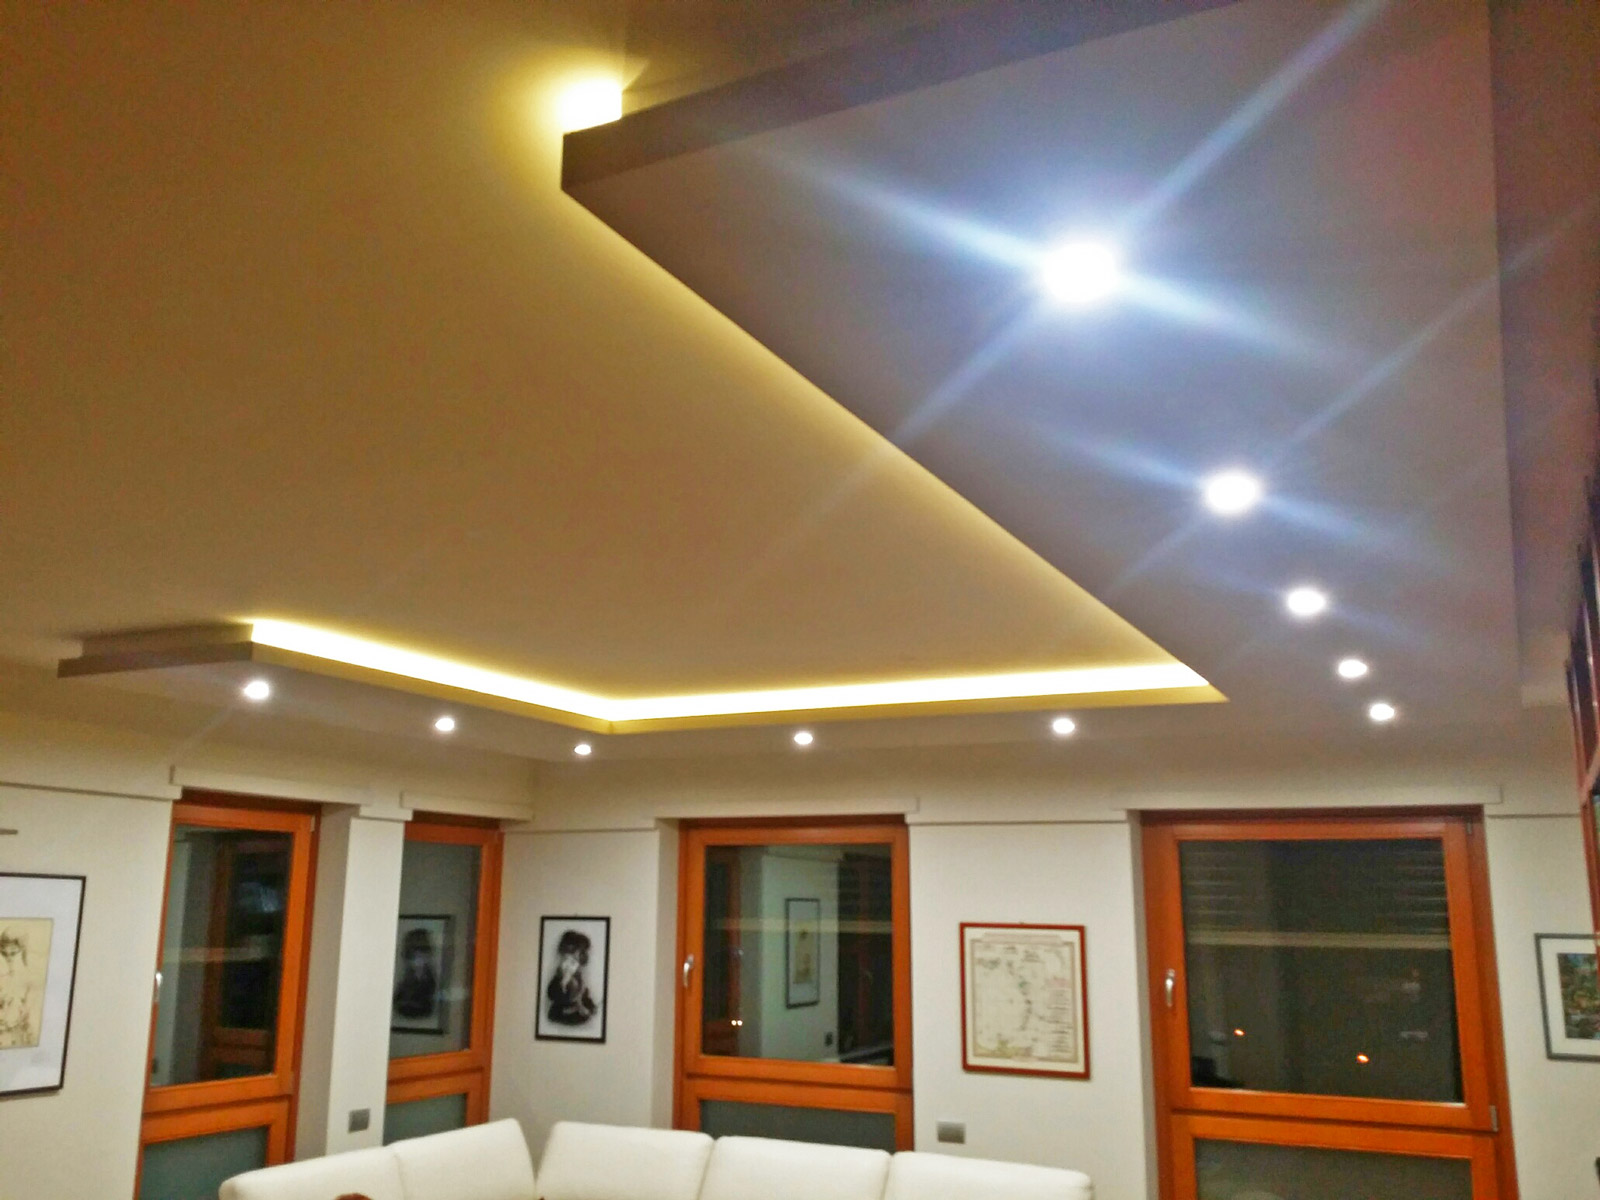 Dettagli Illuminazione con strisce a led e faretti di un abitazione privata a Bra (CN)